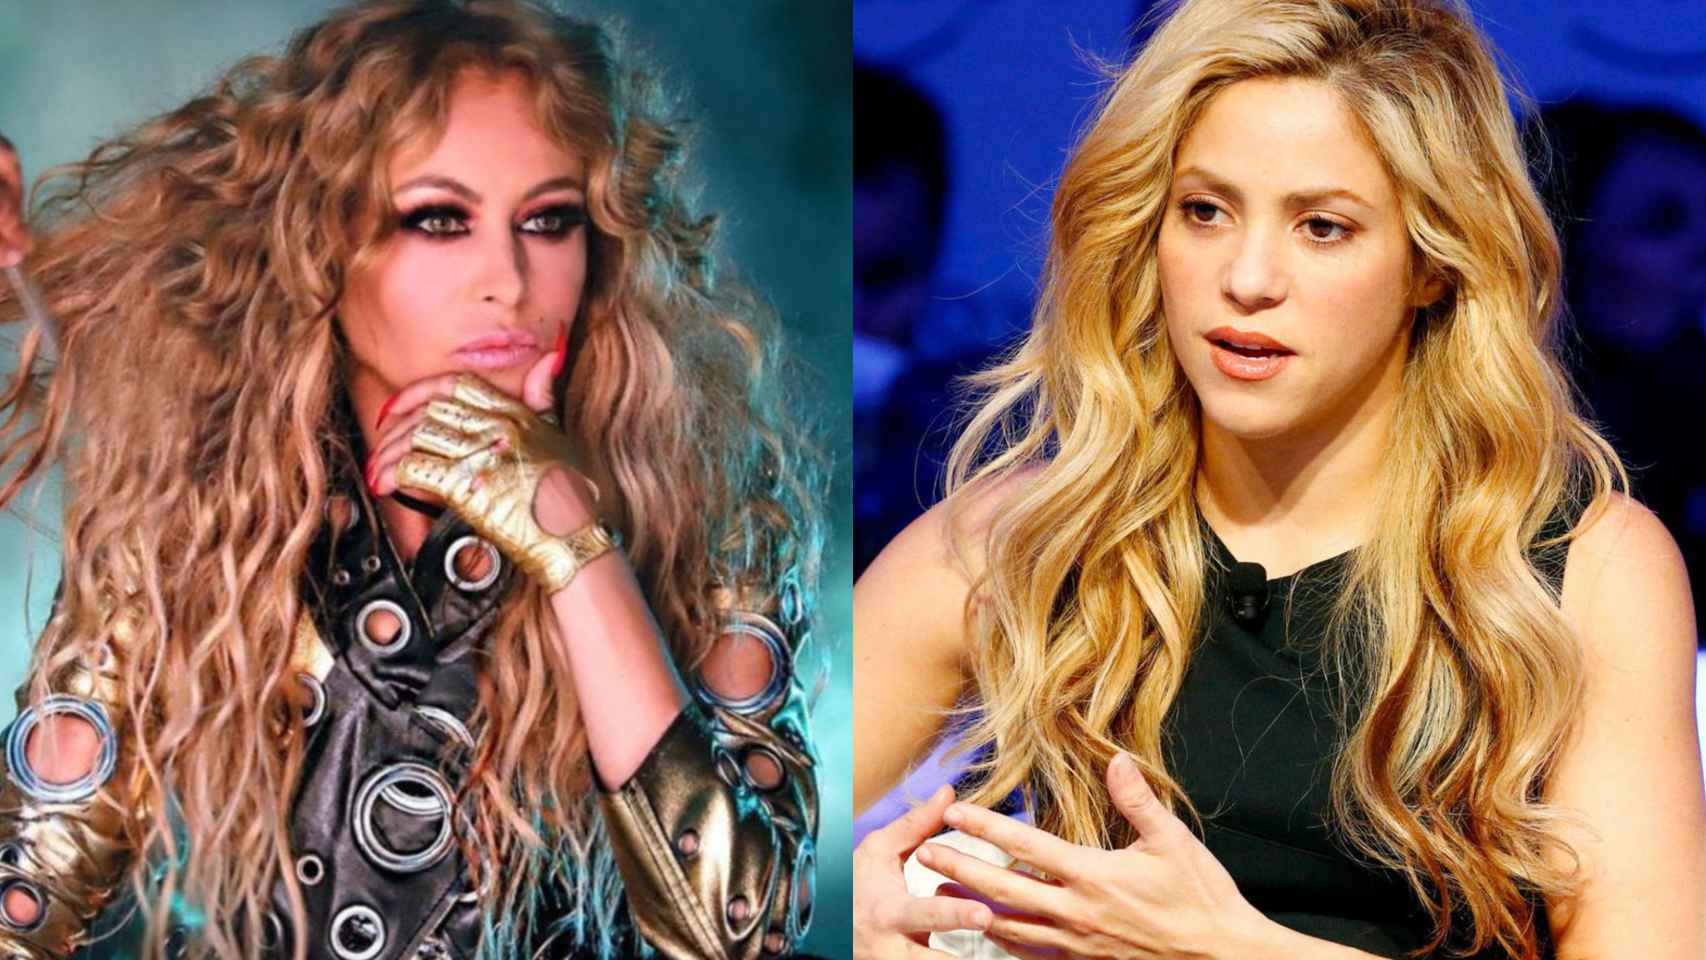 Paulina Rubio y Shakira en un fotomontaje / BMAGAZINE